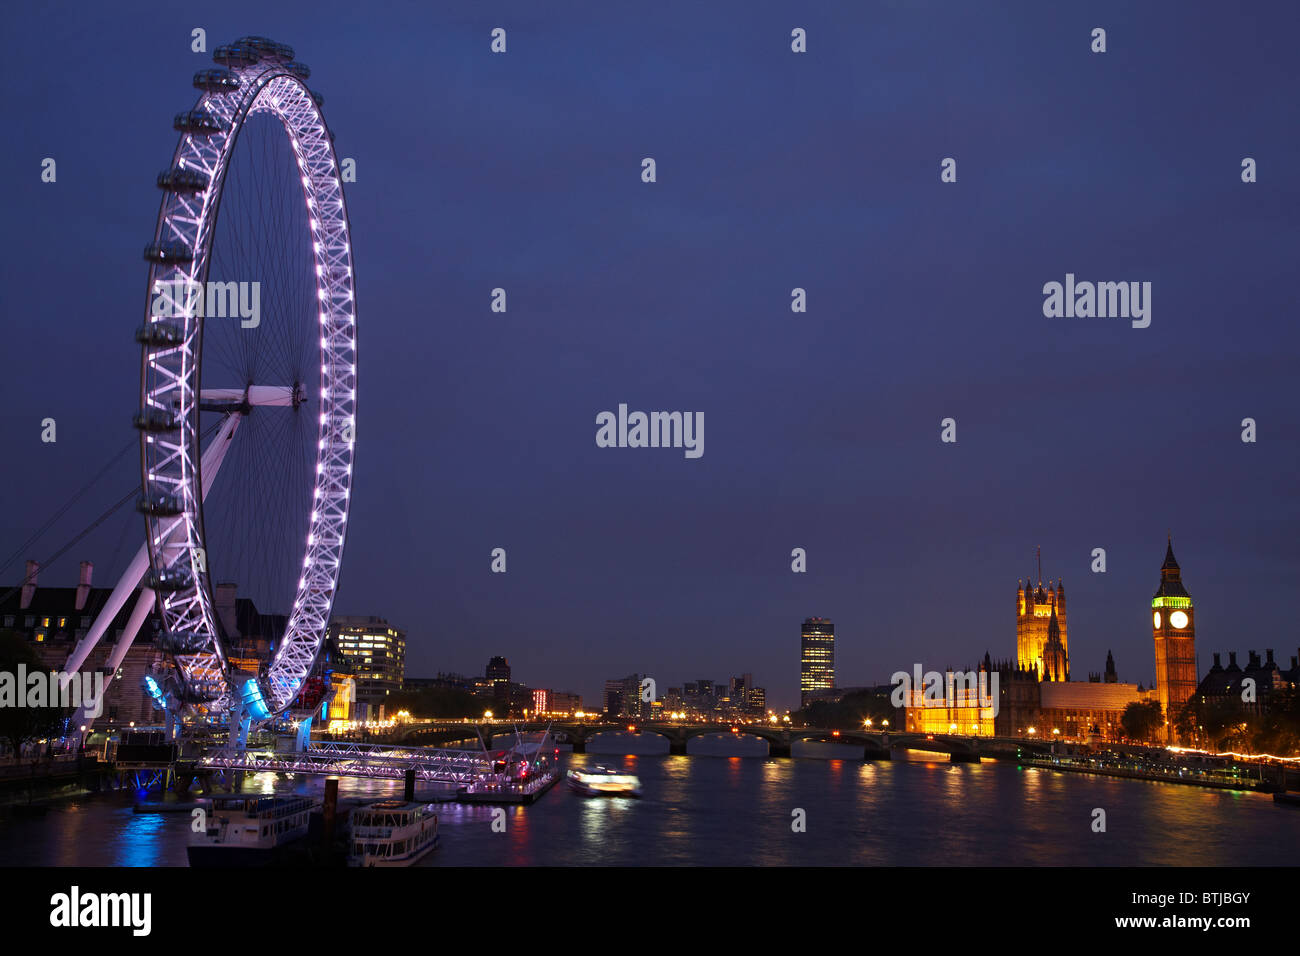 London Eye, chambres du Parlement, Big Ben et la Tamise, Londres, Angleterre, Royaume-Uni Banque D'Images